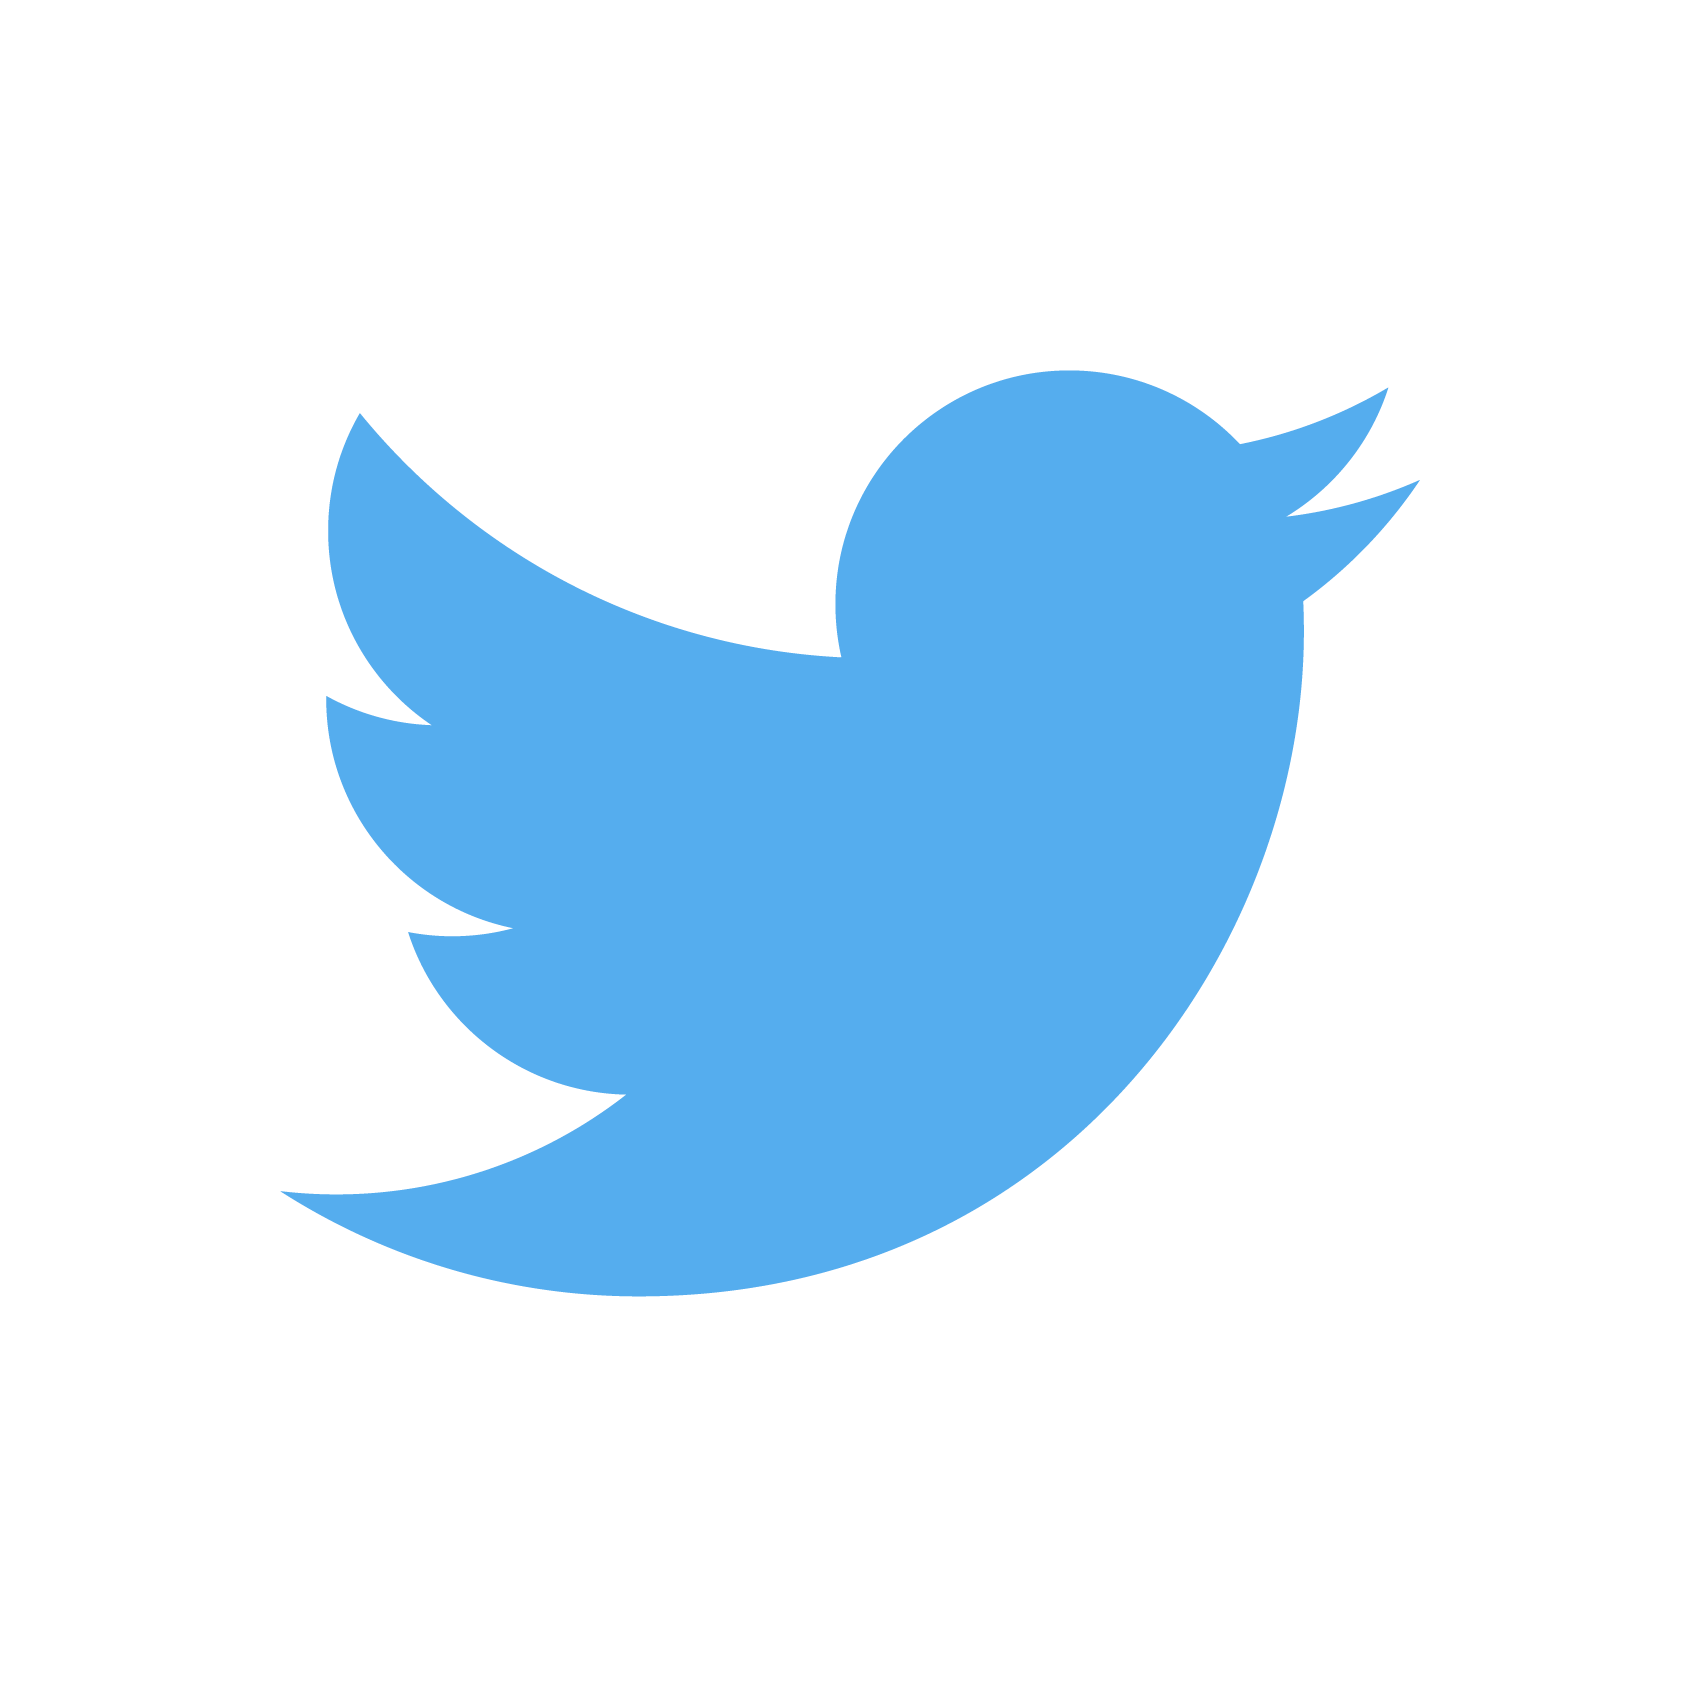 logo_twitter